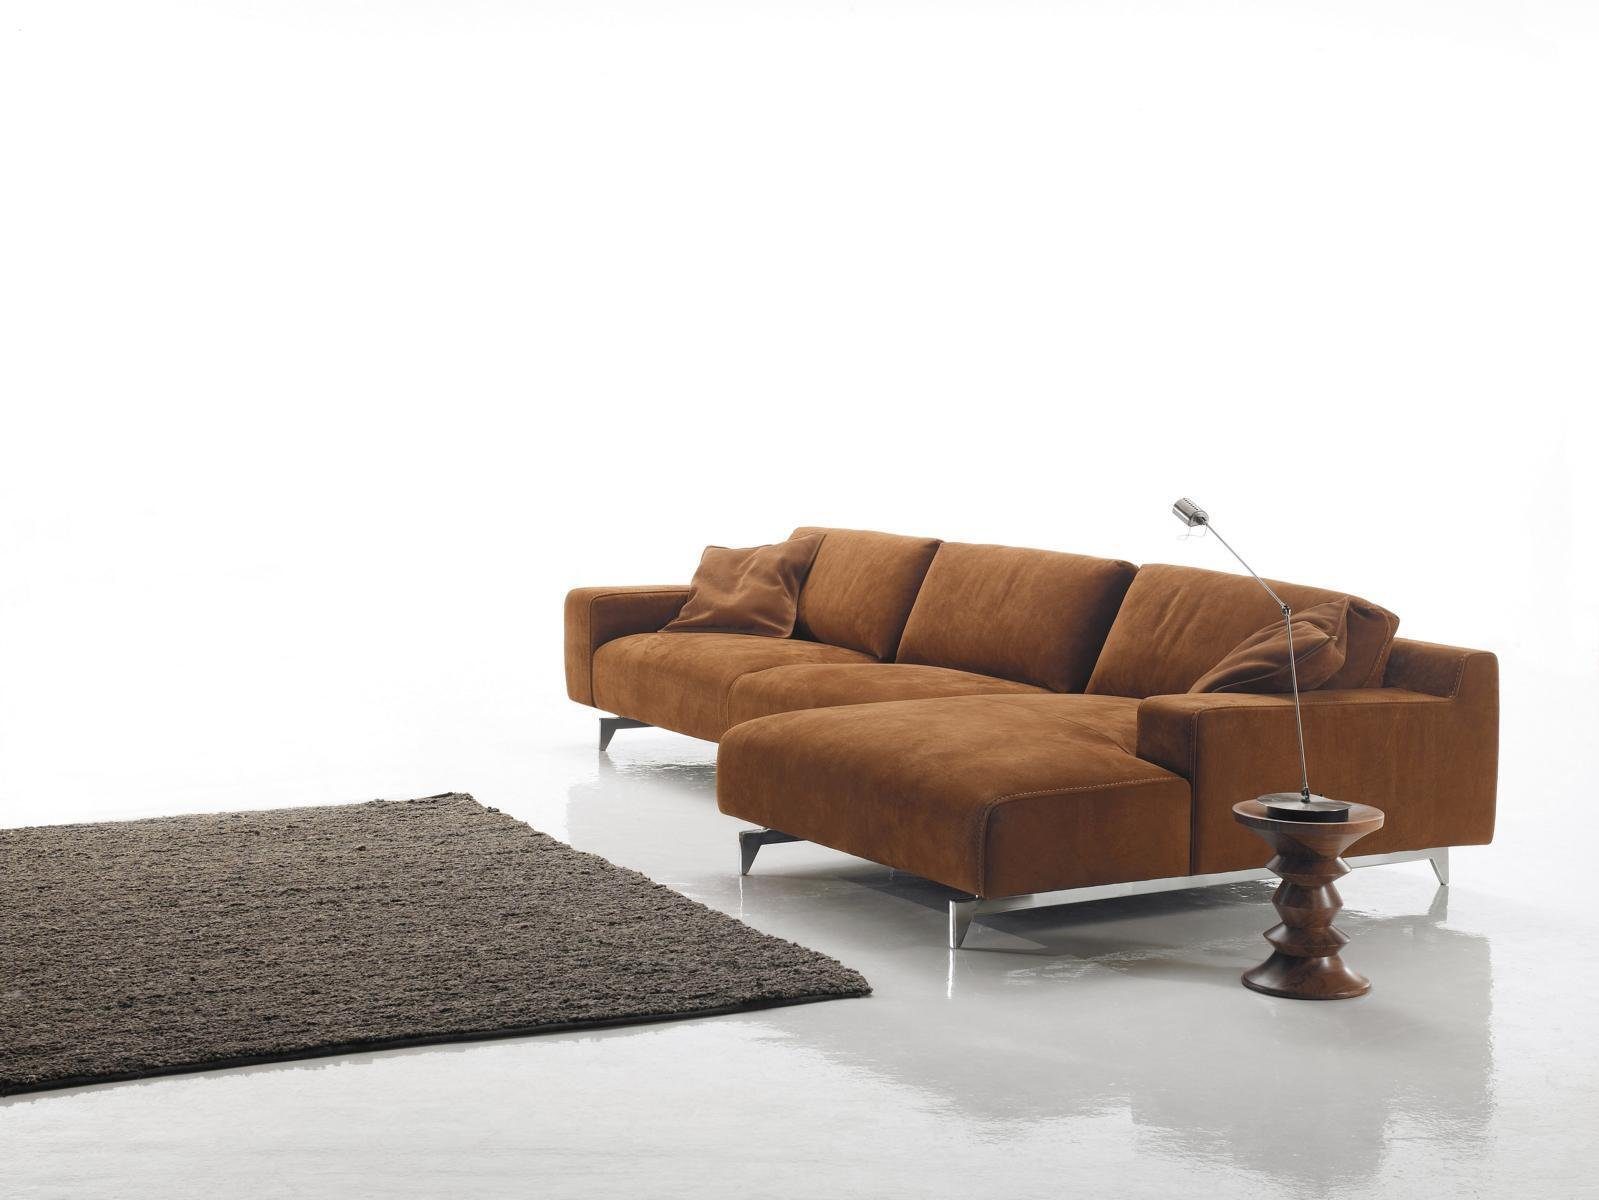 JVmoebel Ecksofa Ecksofa Braun Design Polsterung Textil Couch Wohnzimmer L Sofas Form